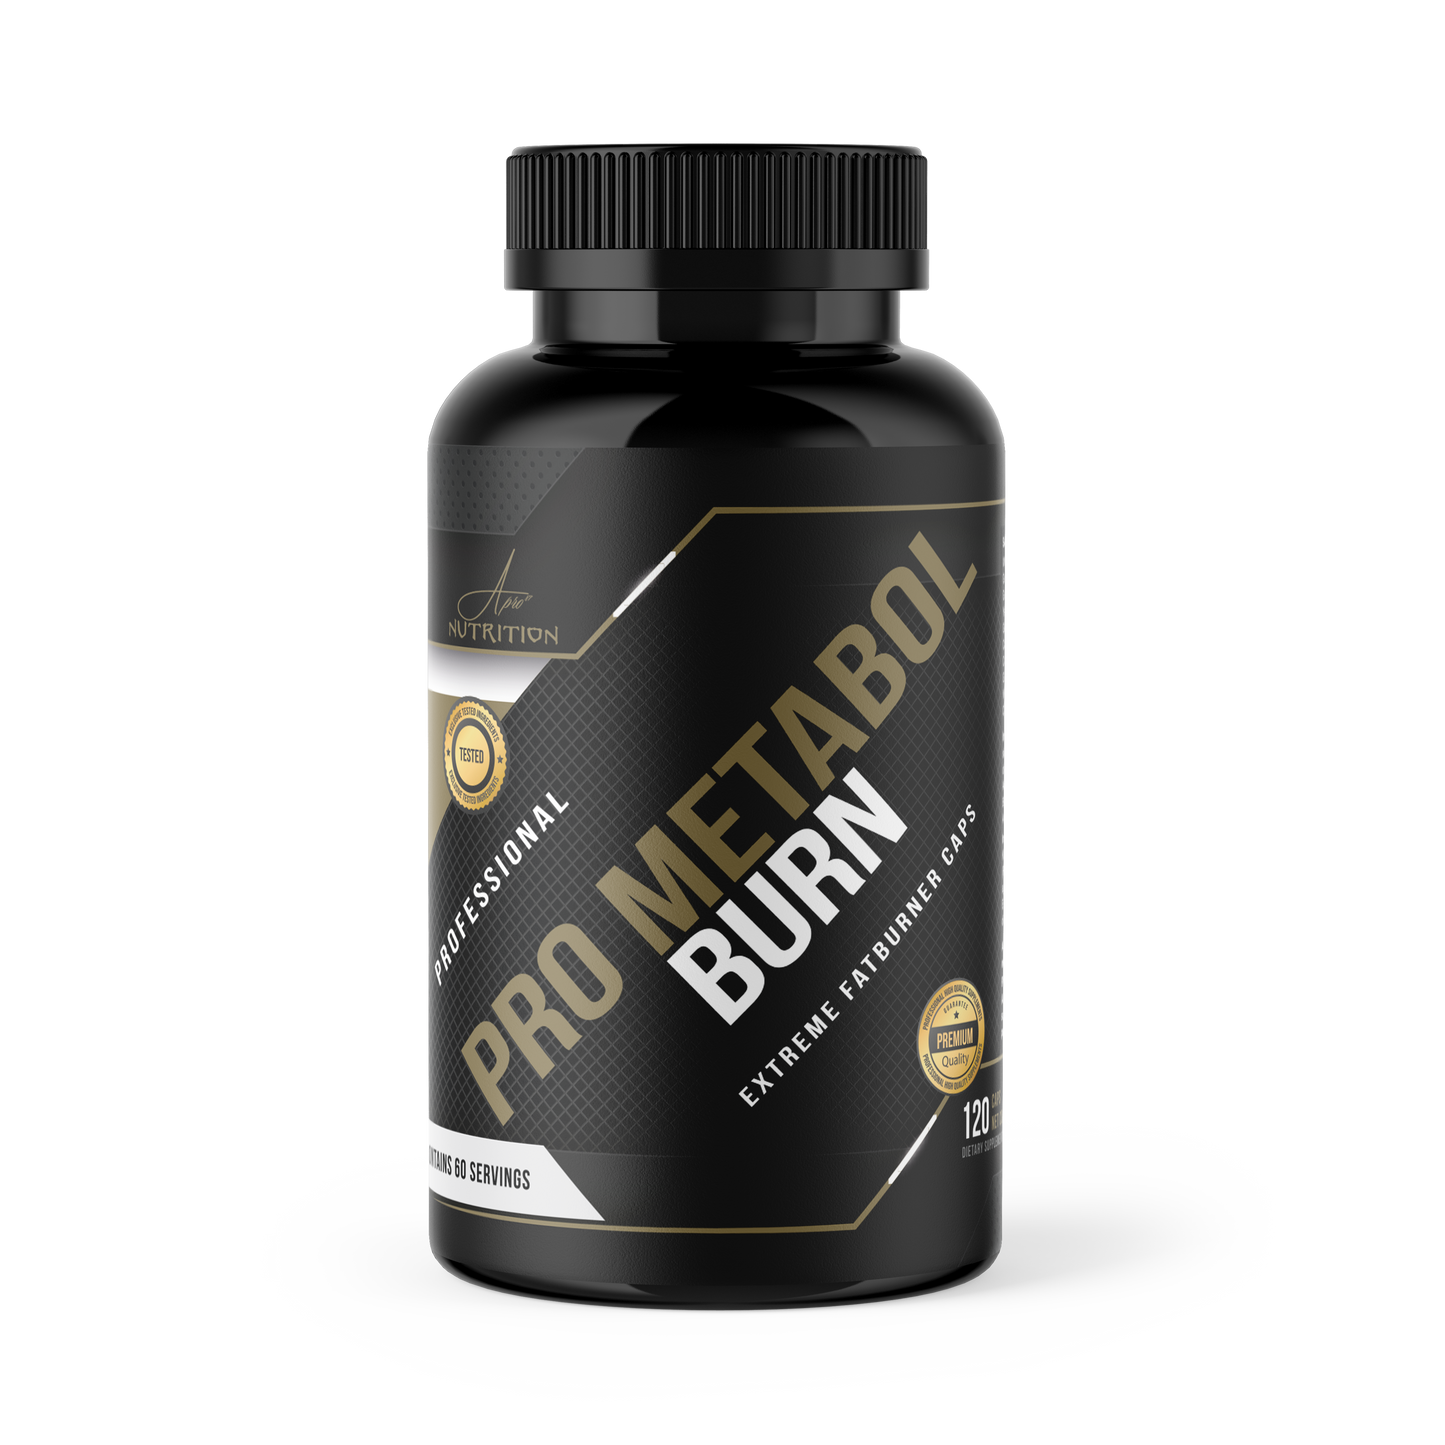 A Pro87 Nutrition pro metabol burn fatburner - vetverbrander - fatburner capsules - weight loss Pro87nutrition.nl - Anis Ammar sportvoeding